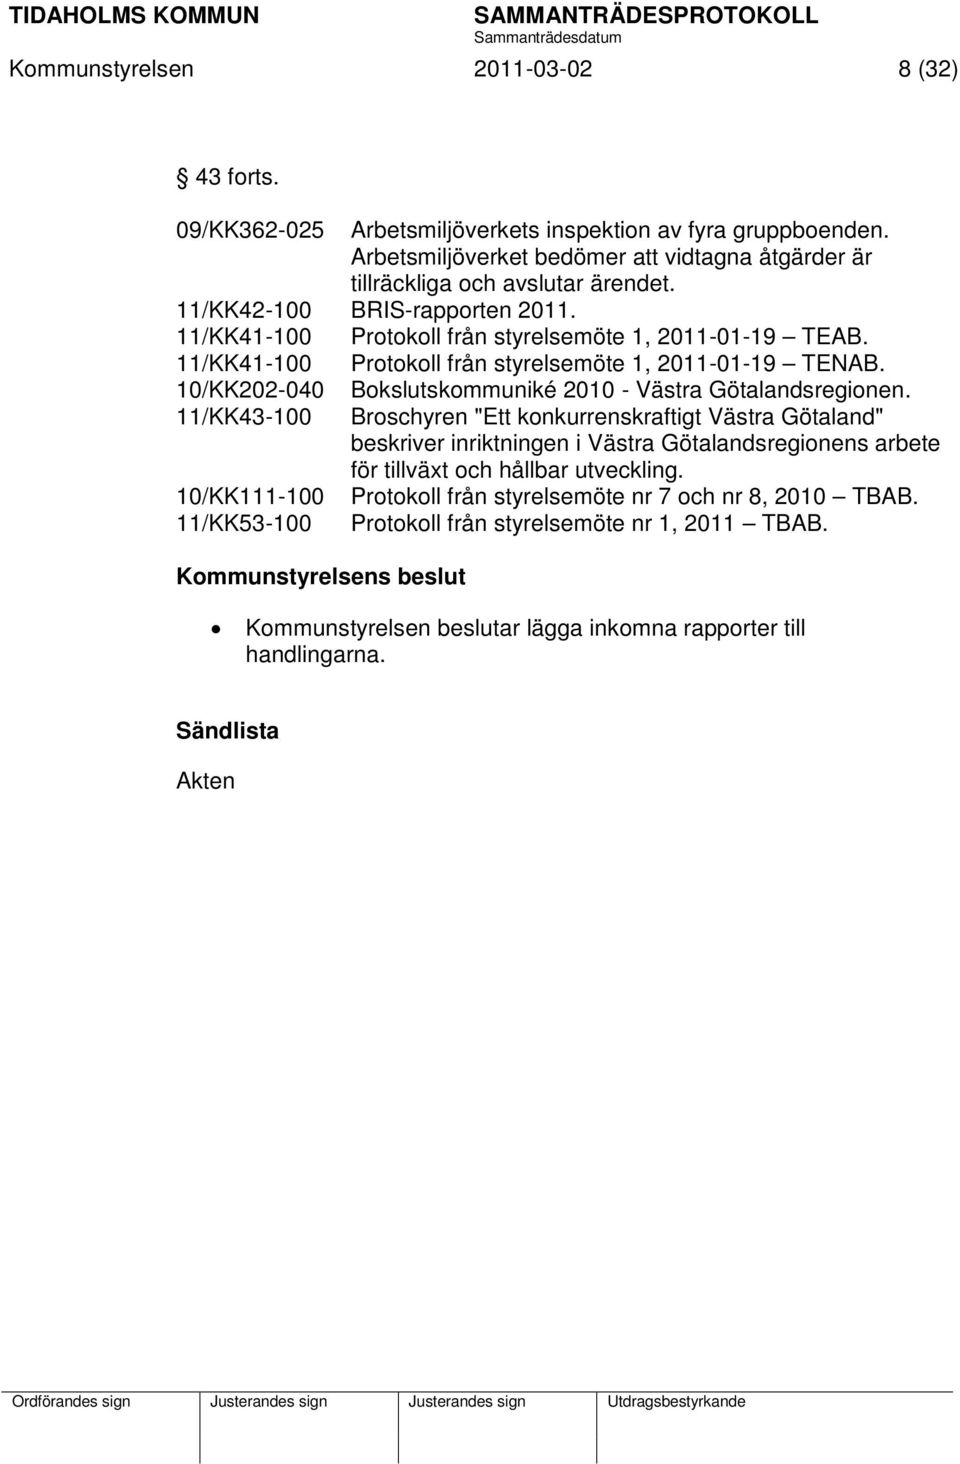 11/KK41-100 Protokoll från styrelsemöte 1, 2011-01-19 TENAB. 10/KK202-040 11/KK43-100 10/KK111-100 11/KK53-100 Bokslutskommuniké 2010 - Västra Götalandsregionen.